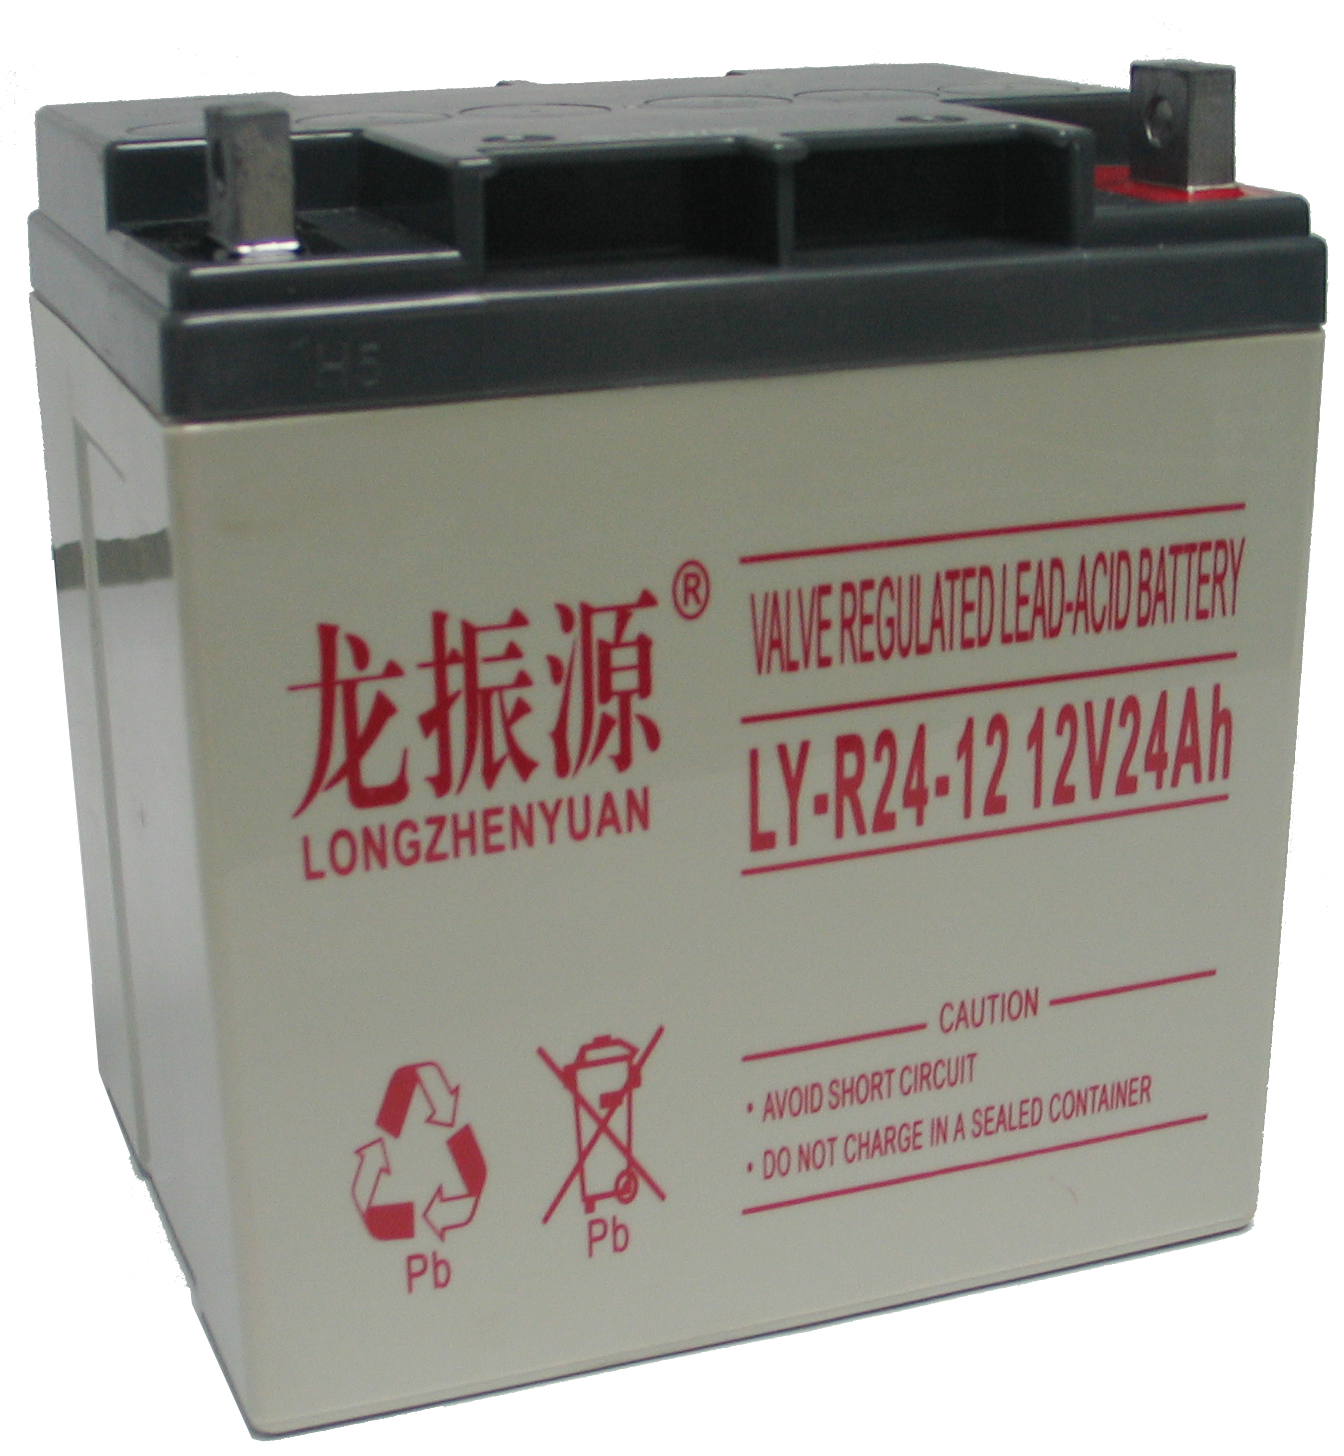 龙振源蓄电池LY-R50-12 12V7AH 安防警报系统